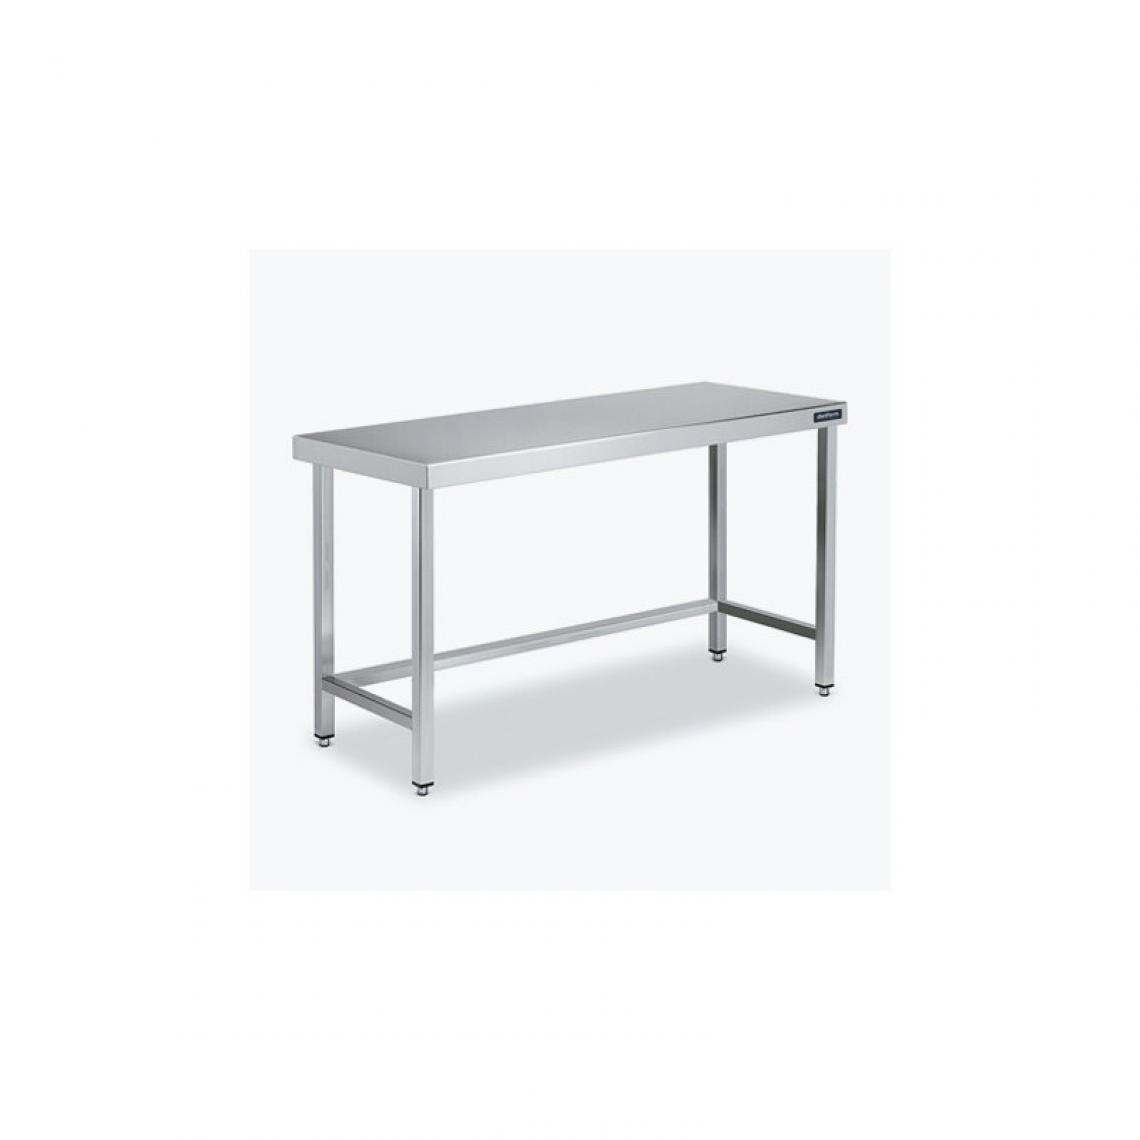 DISTFORM - Table Centrale 600x800 avec Renforts - Distform - Inox 18/101100x800x850mm - Tables à manger